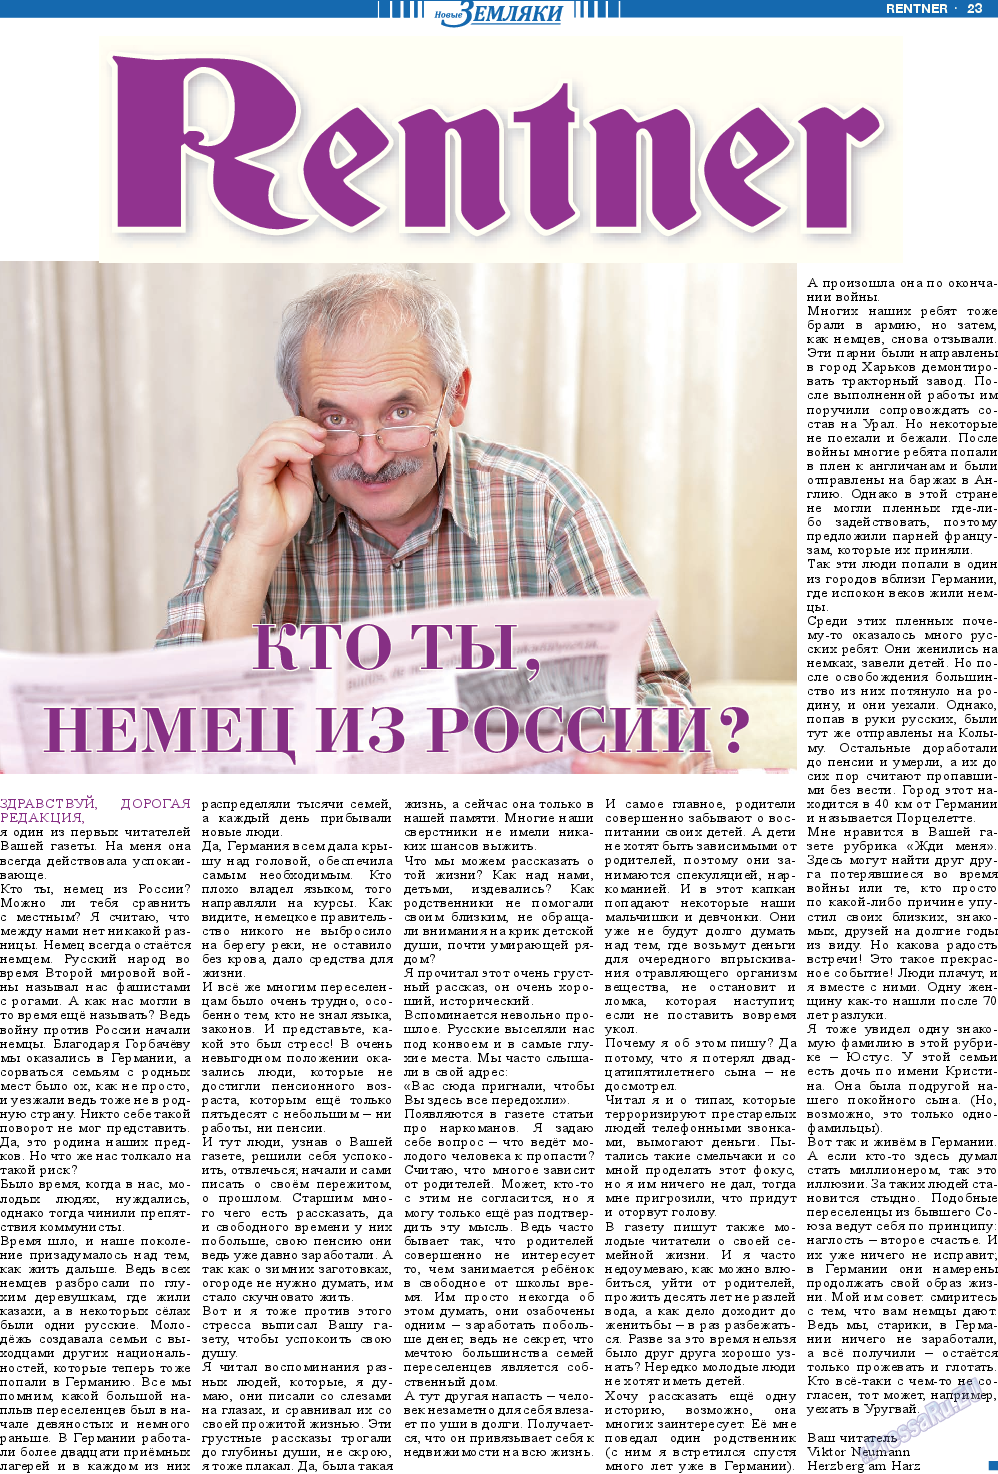 Новые Земляки, газета. 2013 №5 стр.23